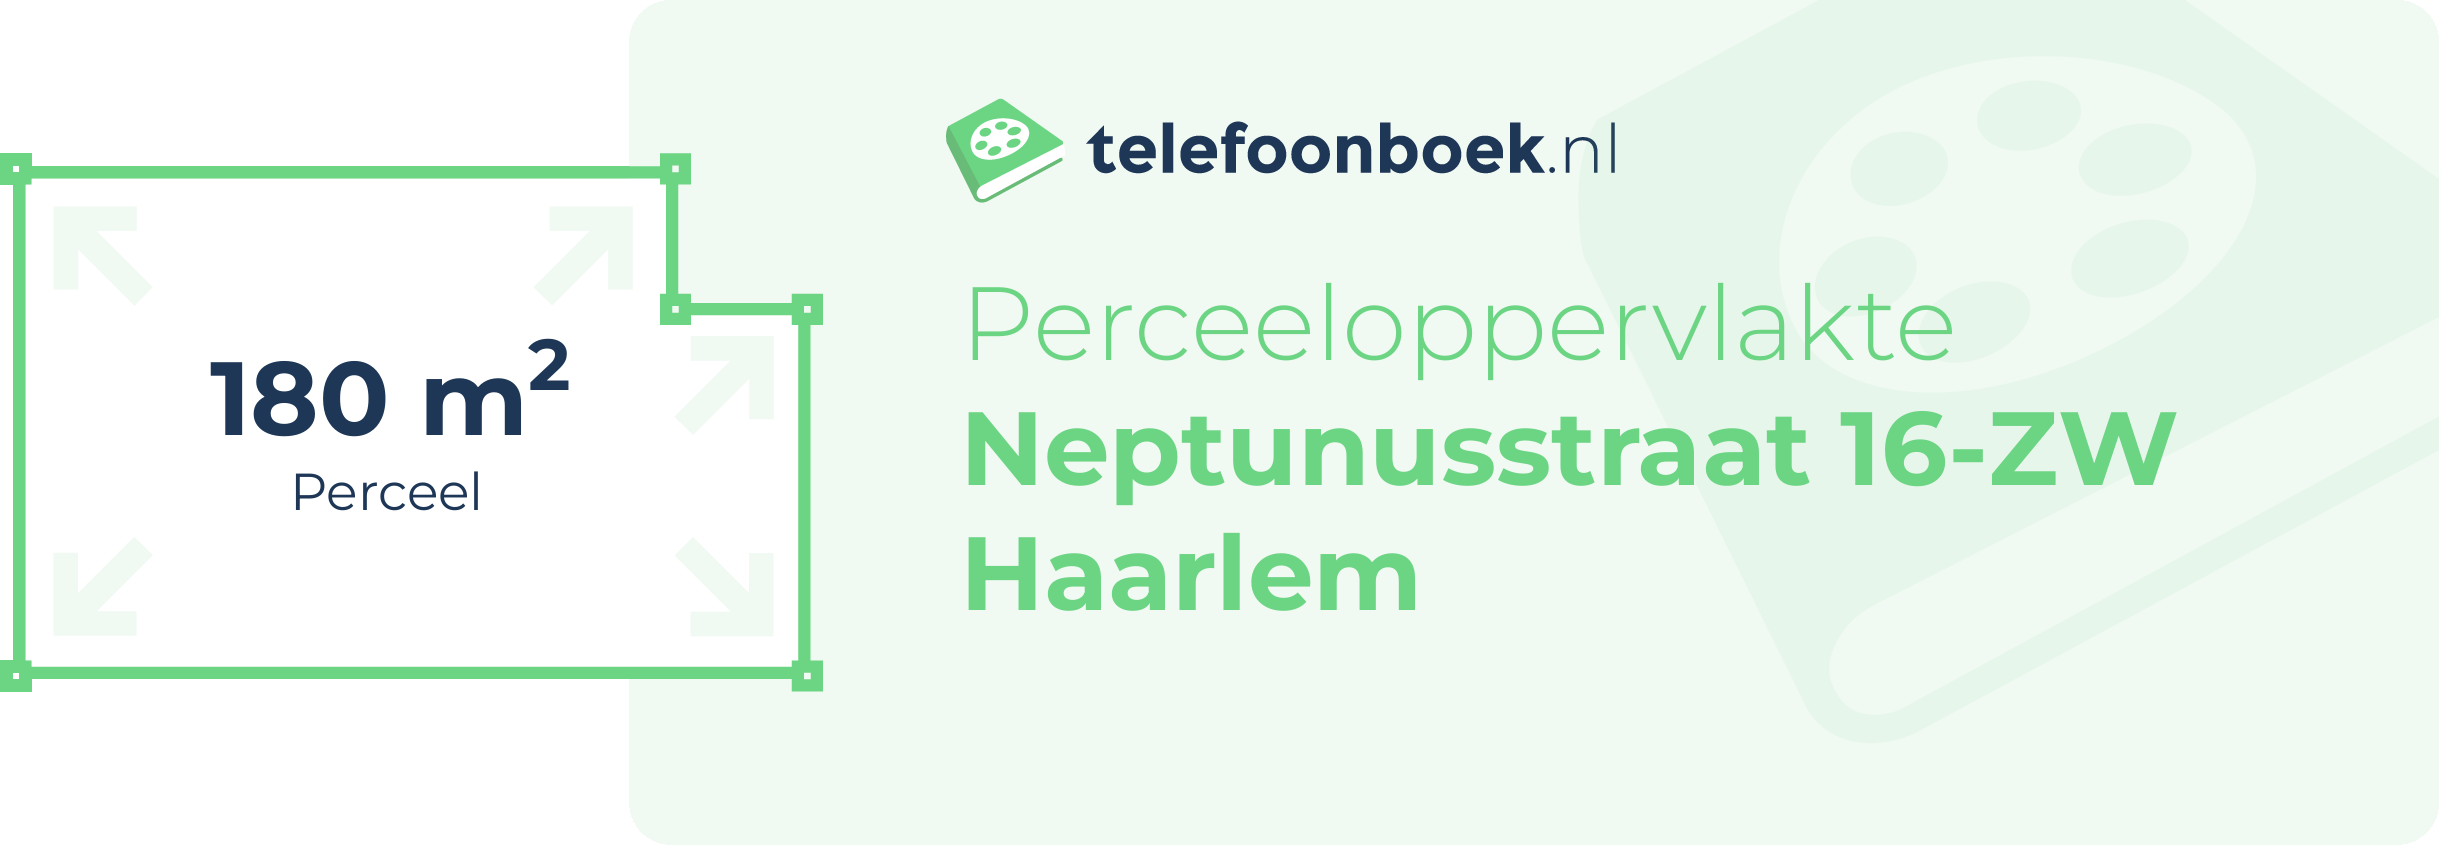 Perceeloppervlakte Neptunusstraat 16-ZW Haarlem